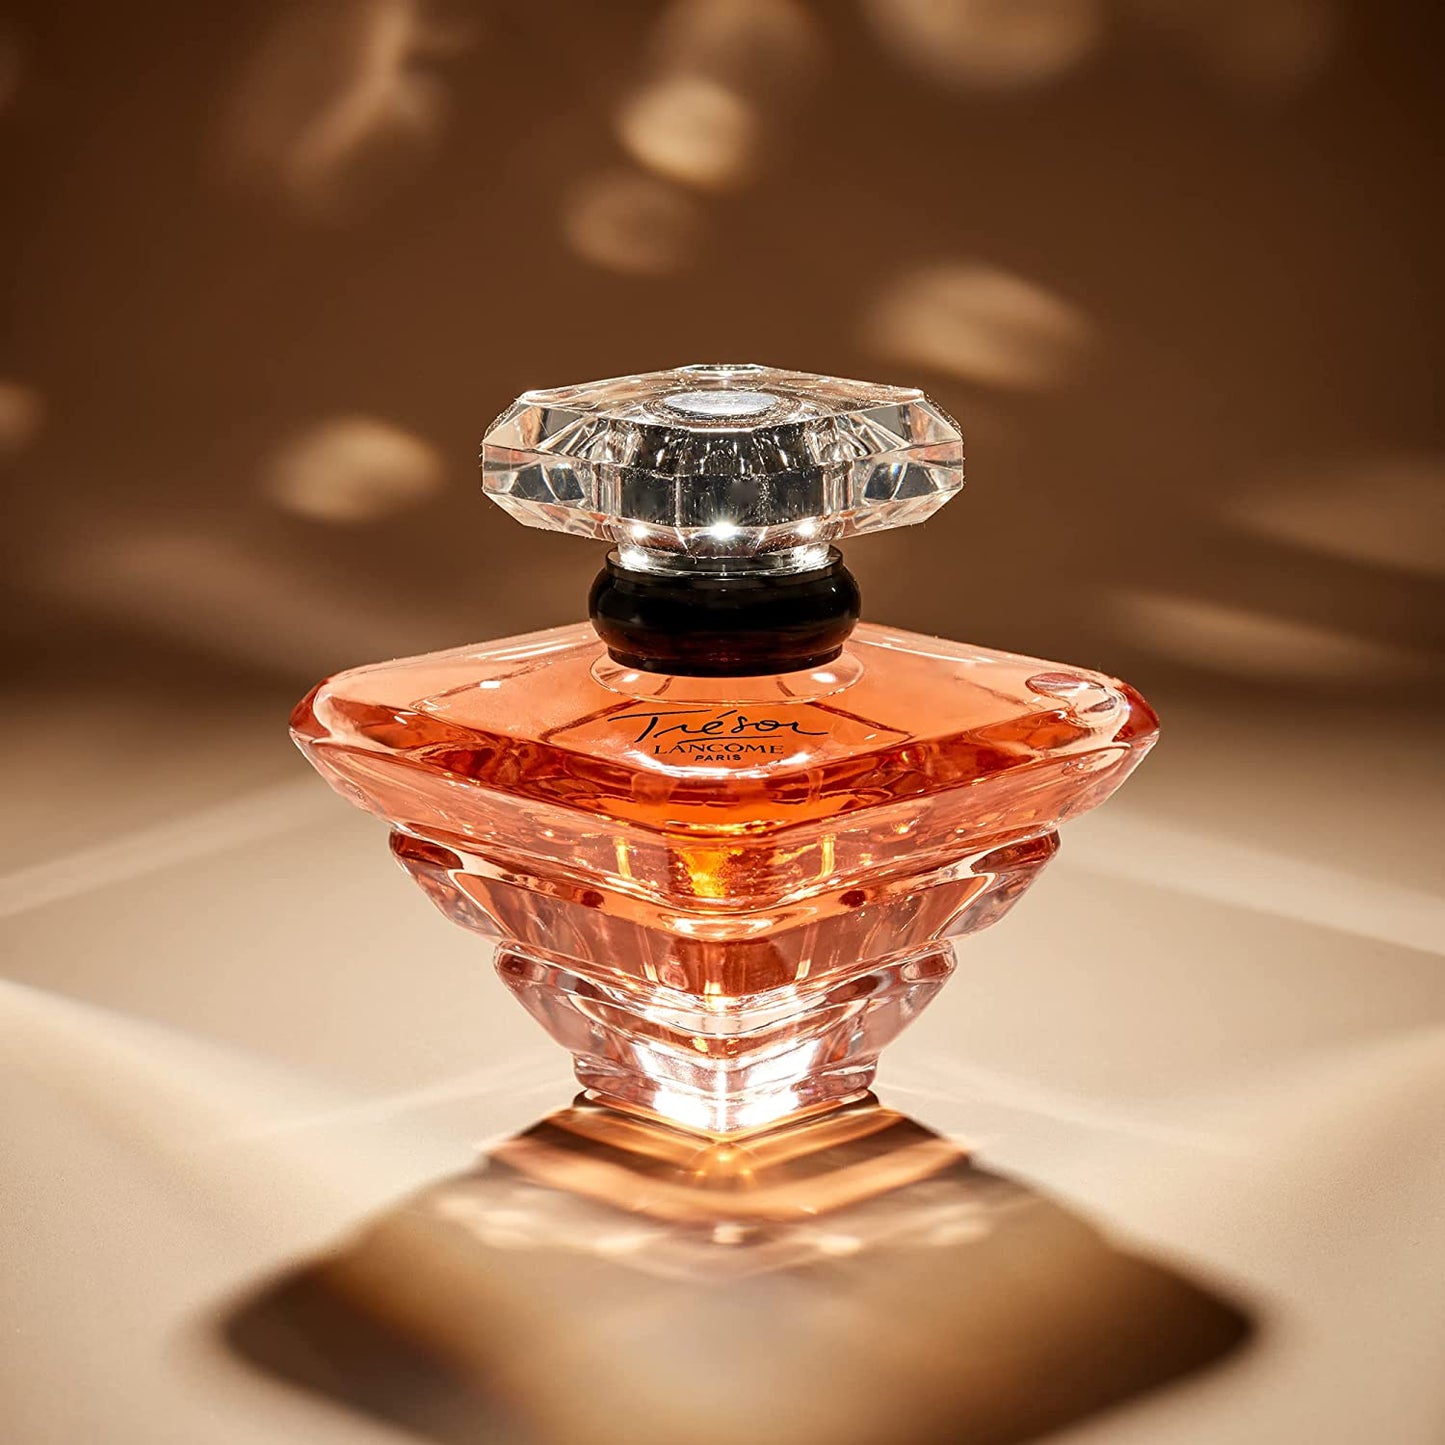 Trésor Eau De Parfum - Women'S Perfume​ - with Rose, Lilac and Apricot Blossom - Long Lasting Fragrance